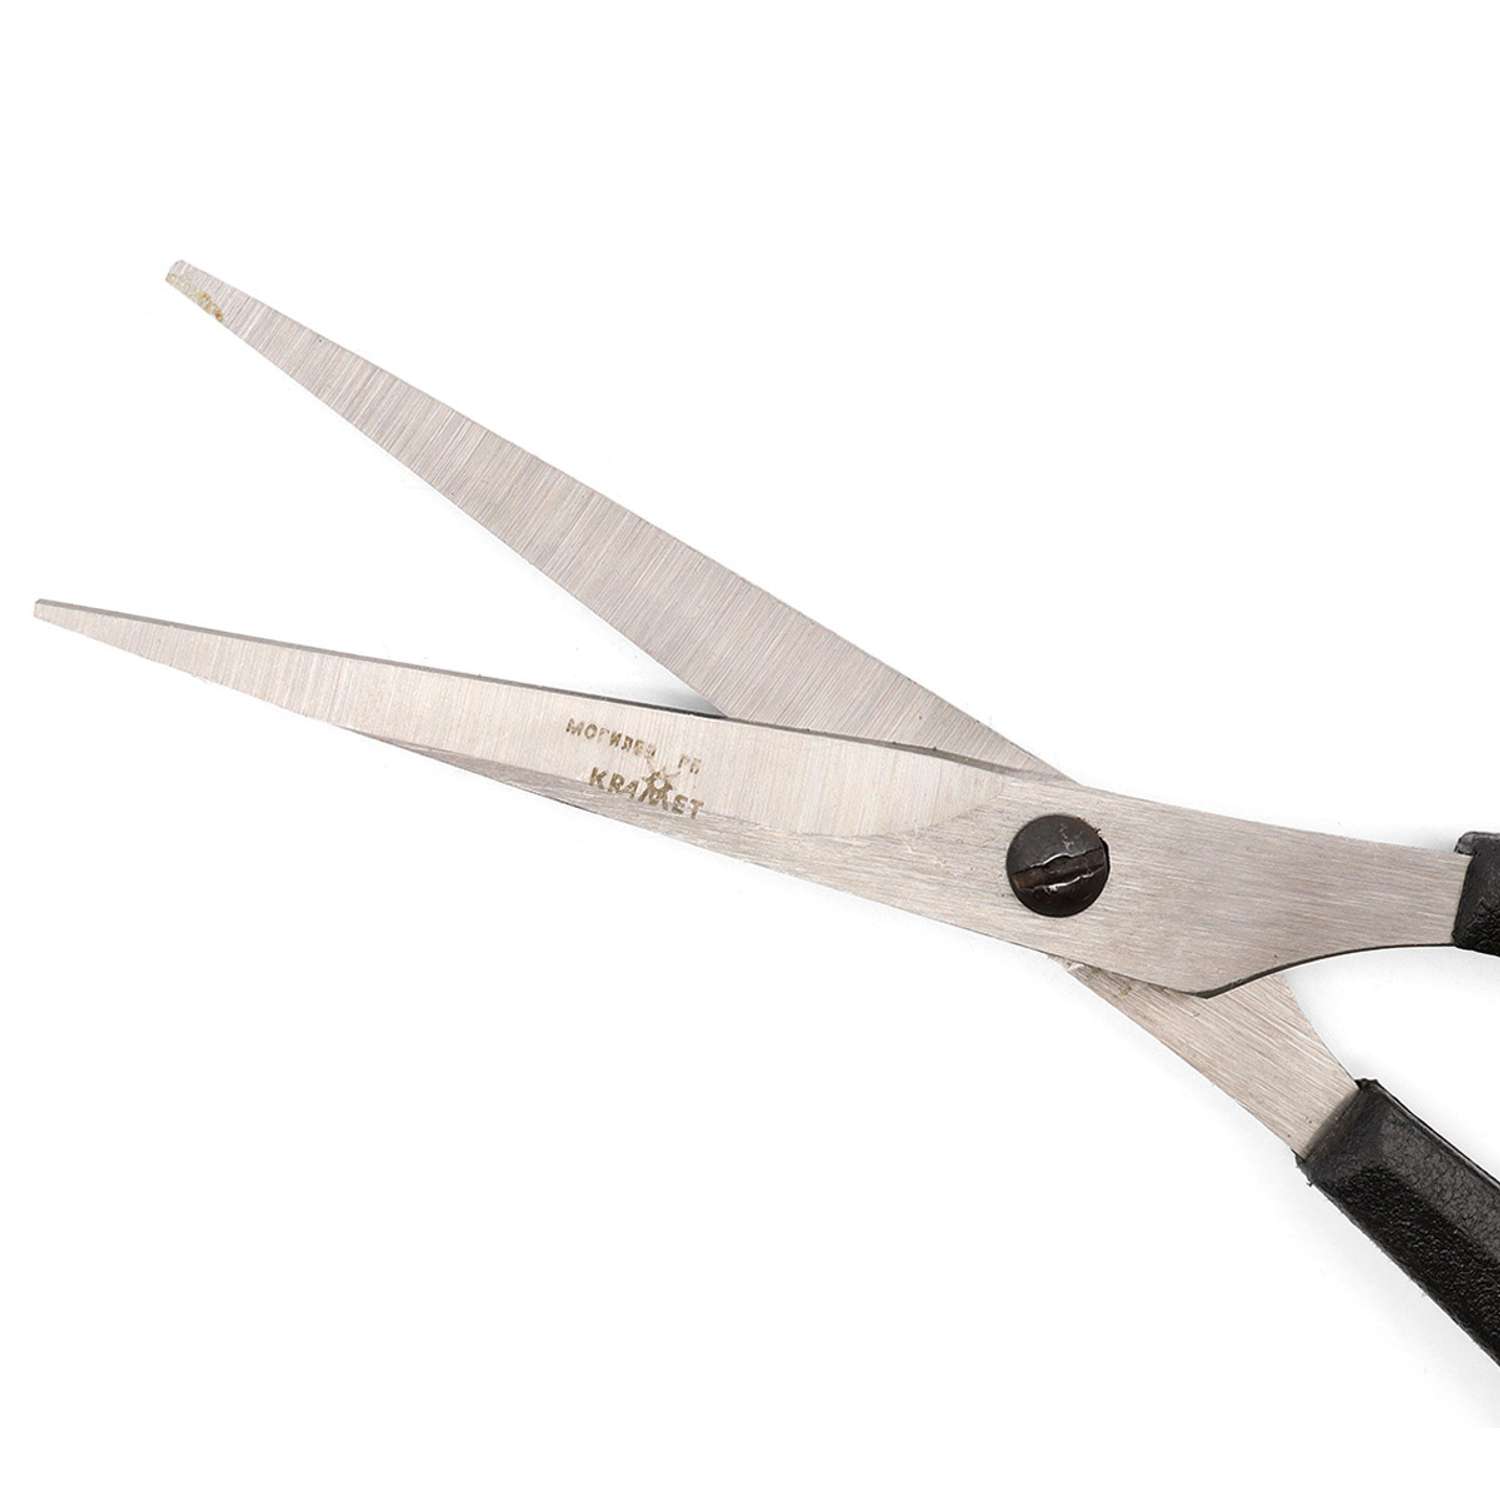 Ножницы универсальные KARMET стальные пластиковые ручки с усилителем и винтом для регулировки хода 17 см - фото 2